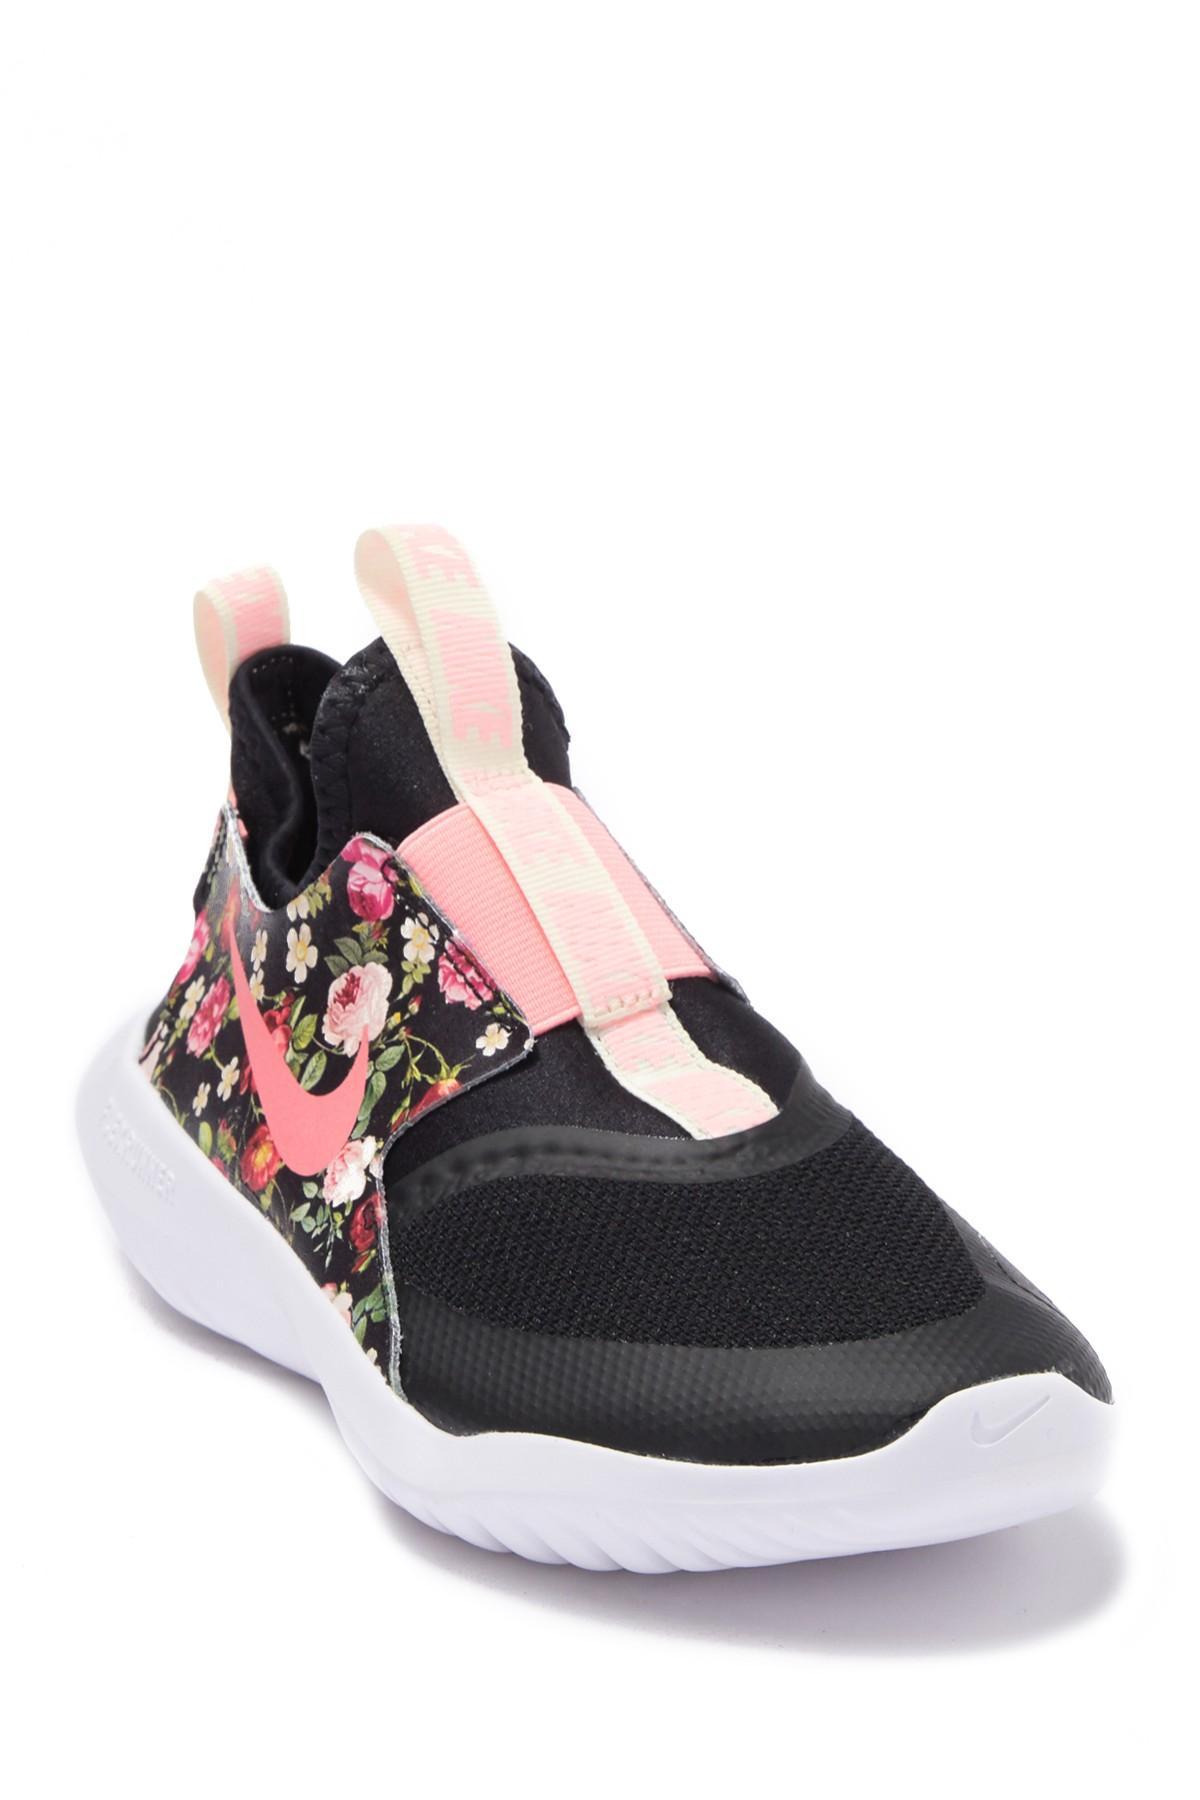 nike vintage floral running shoes